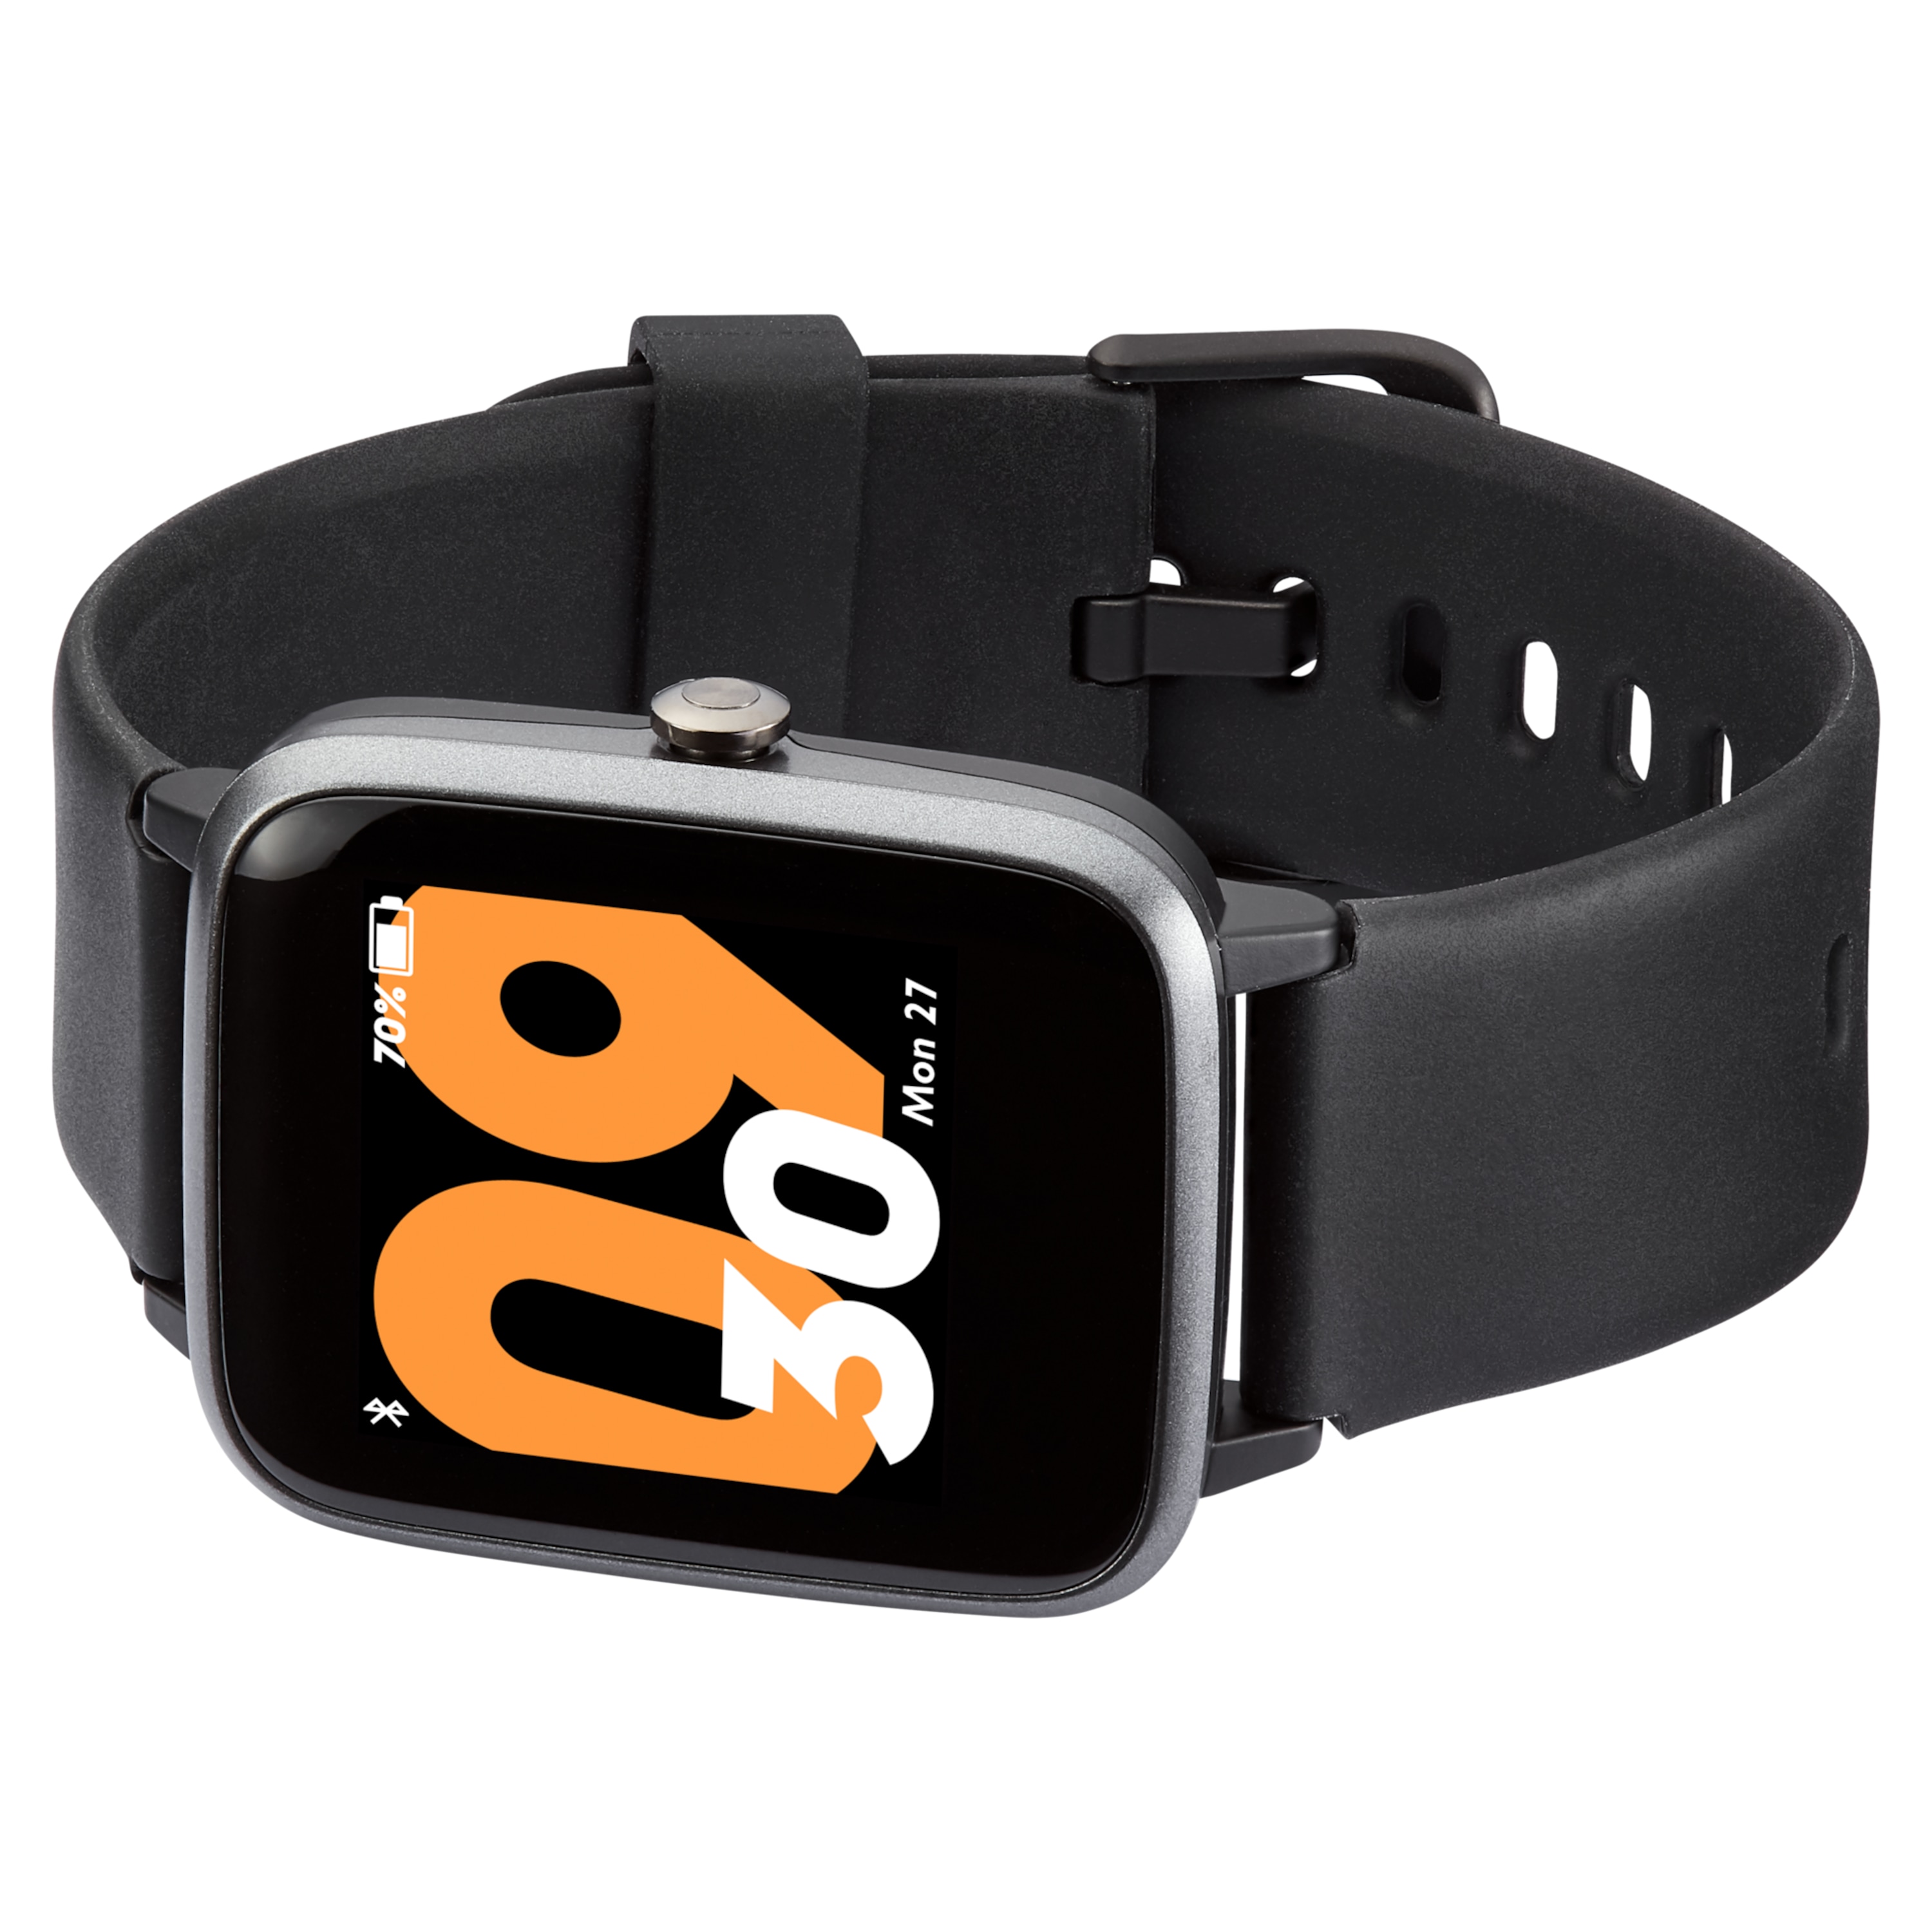 MEDION® LIFE® P4000 GPS Fitnesswatch mit Farbdisplay, Multi-Sport Modi, Herzfrequenzmesser, Schlaftracking, Schrittzähler, Wecker, Staub- und Wassergeschützt